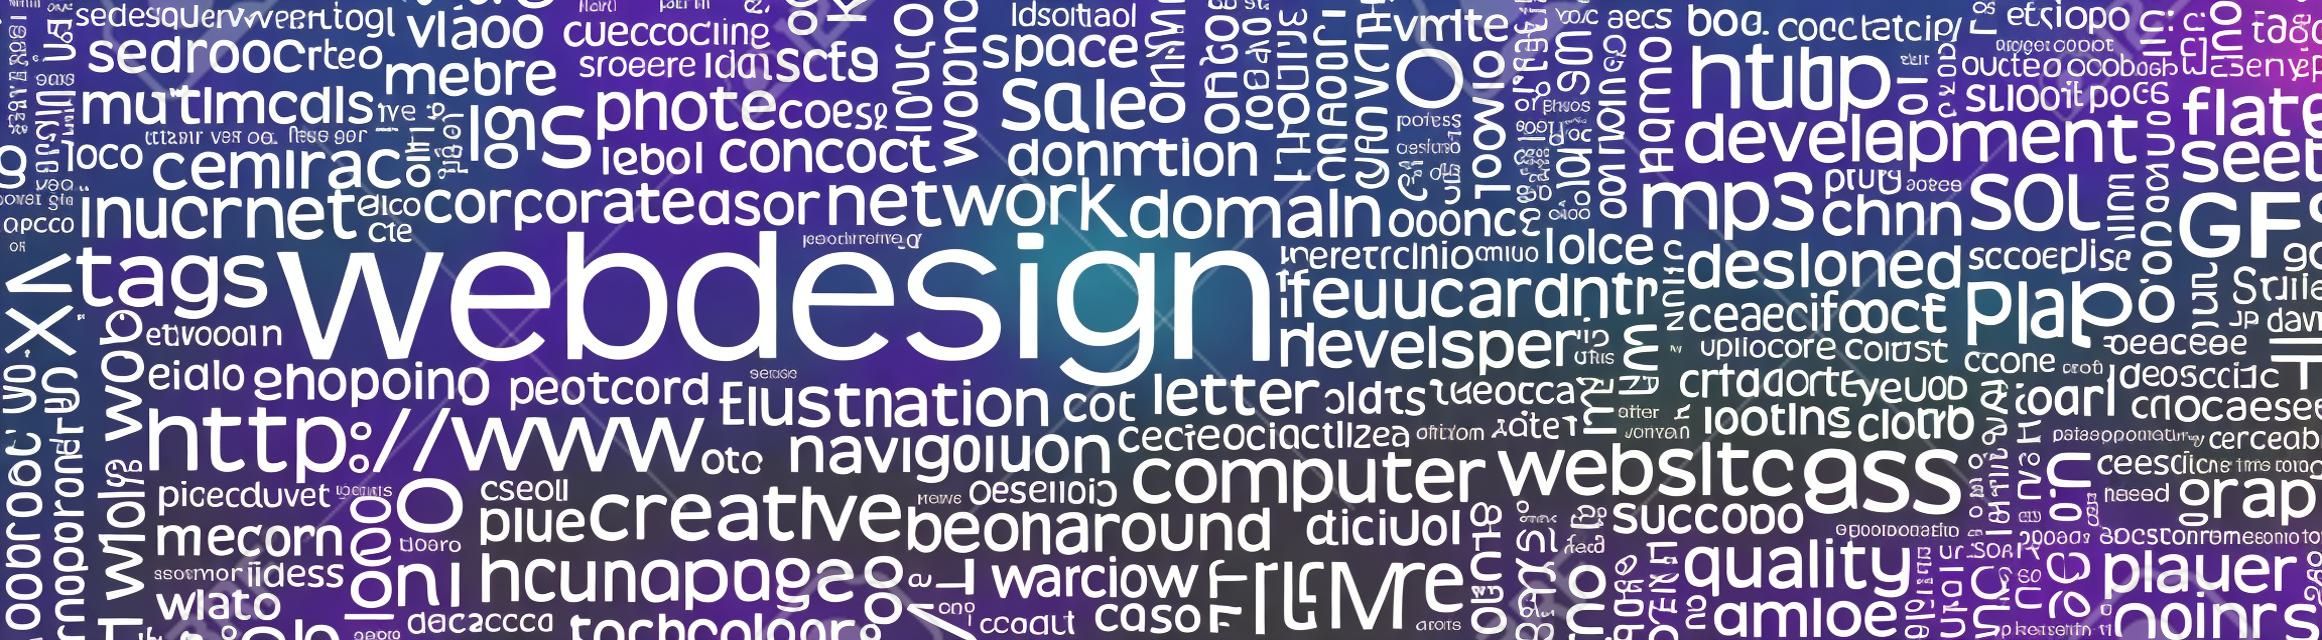 Webdesign Keyword Tag Cloud Panorama mit vielen spezifischen Web Design Words - Wort-Wolke - Vector Hintergrund Banner - SEO, HTML, PHP, CSS, JPG, SQL